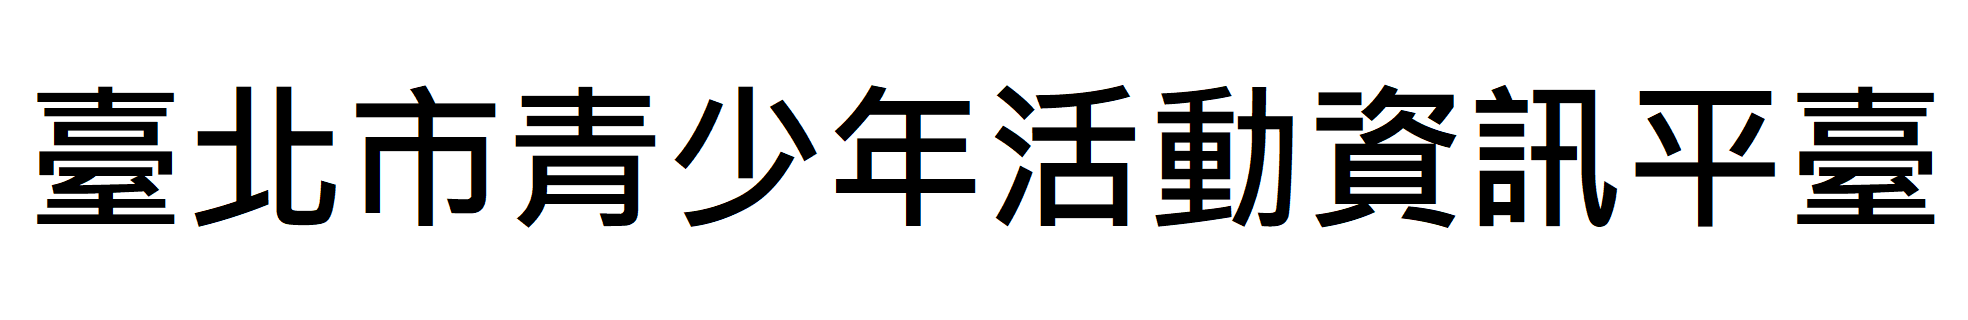 臺北市青少年活動資訊平臺Logo